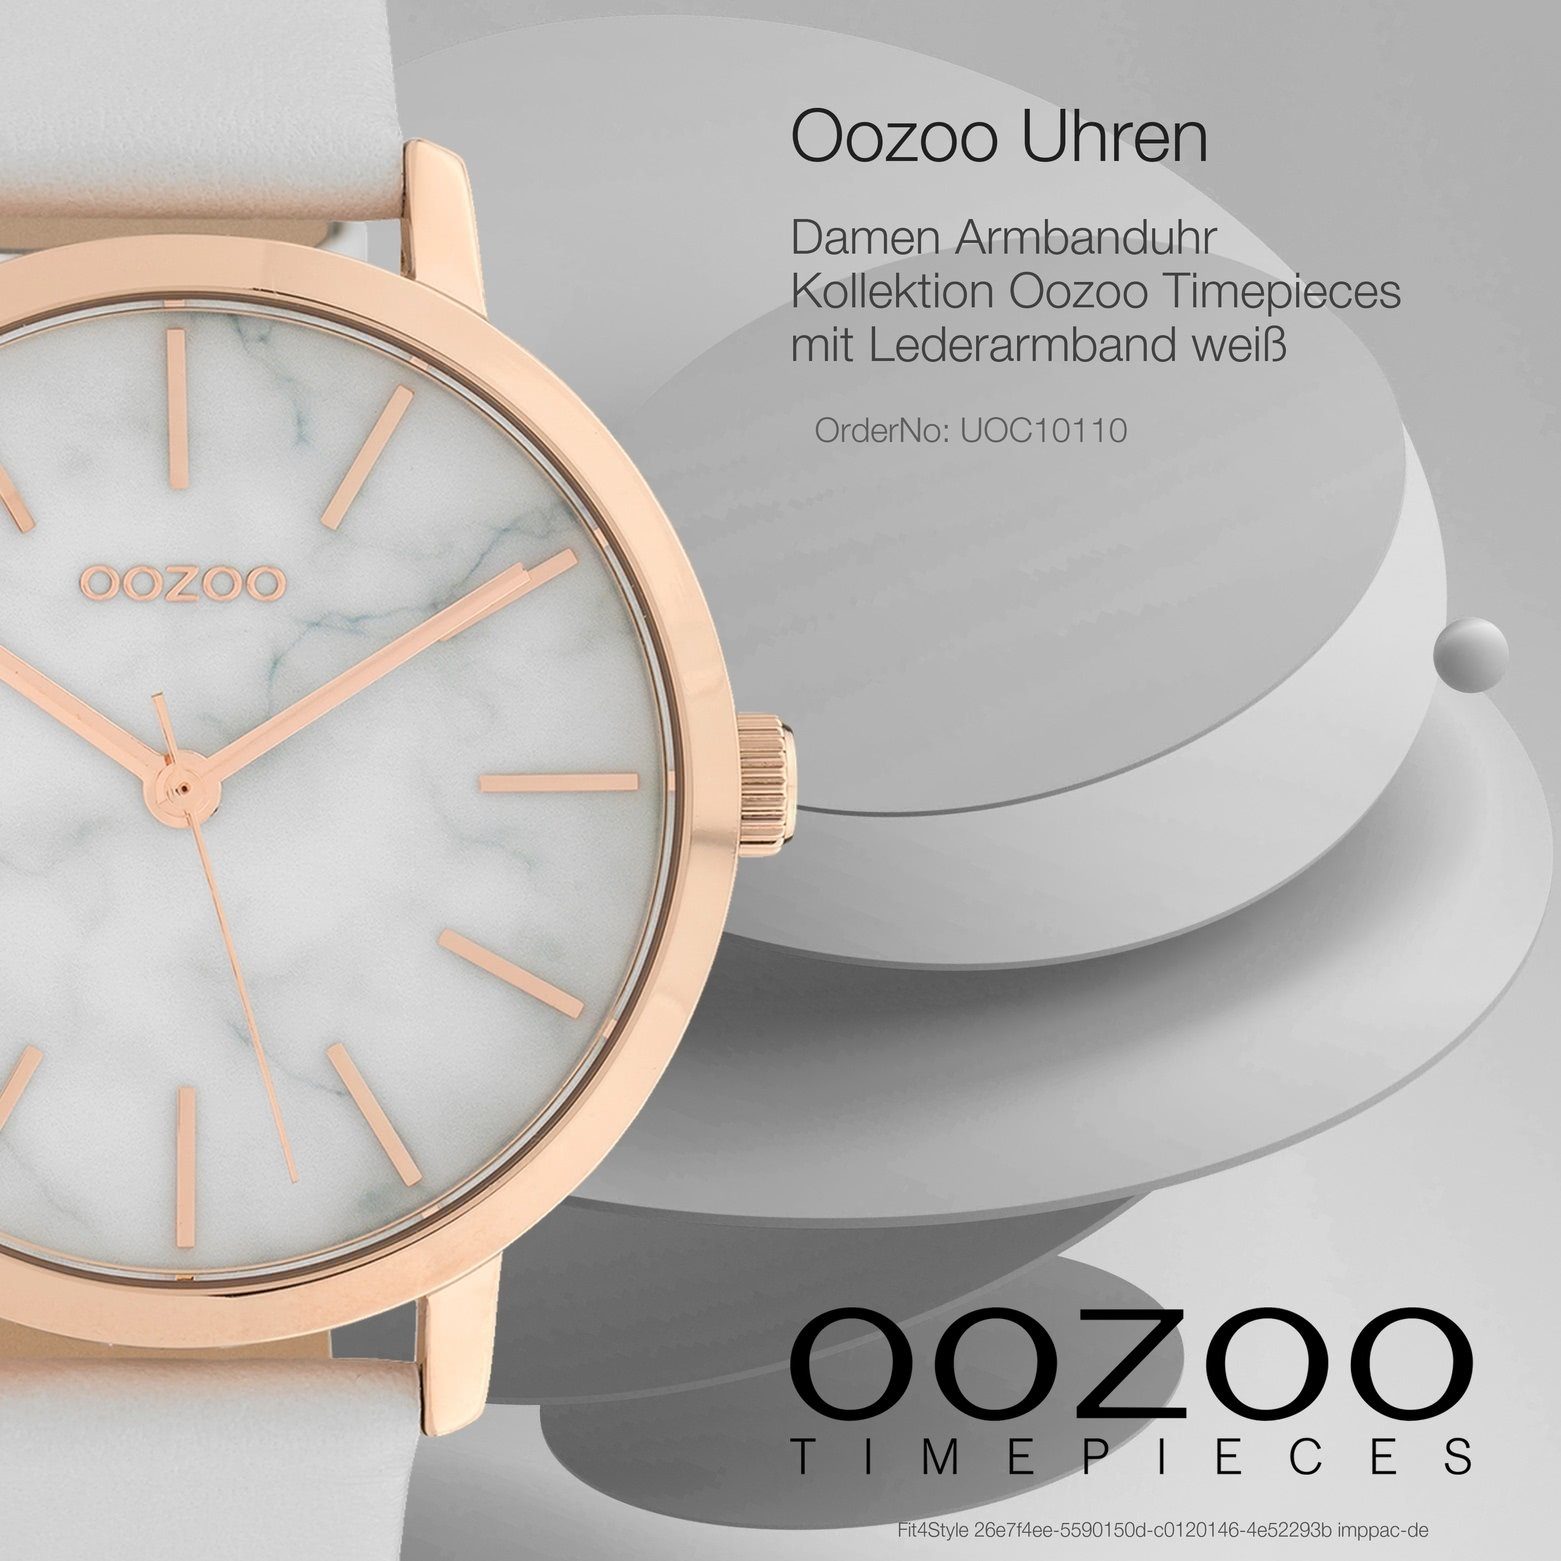 OOZOO Quarzuhr Oozoo Damen Armbanduhr Lederarmband, Fashion-Style weiß (ca. 38mm) Damenuhr mittel Analog, rund